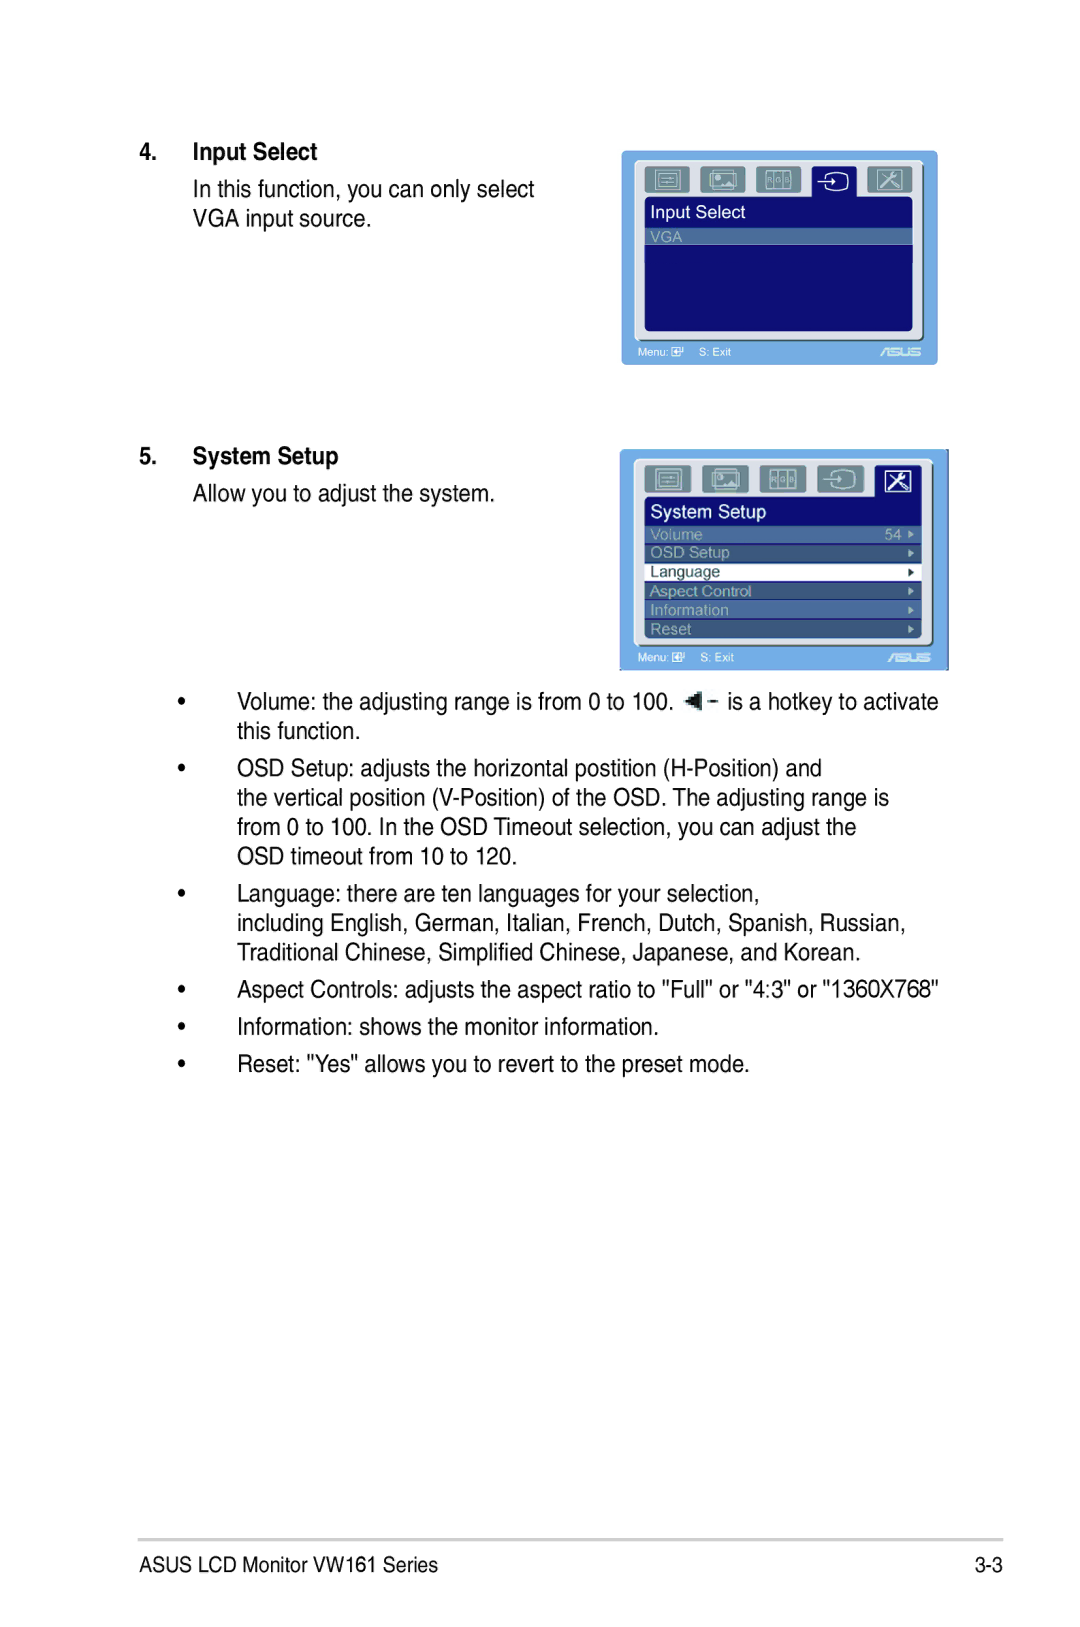 Asus VW161 manual Input Select, System Setup 